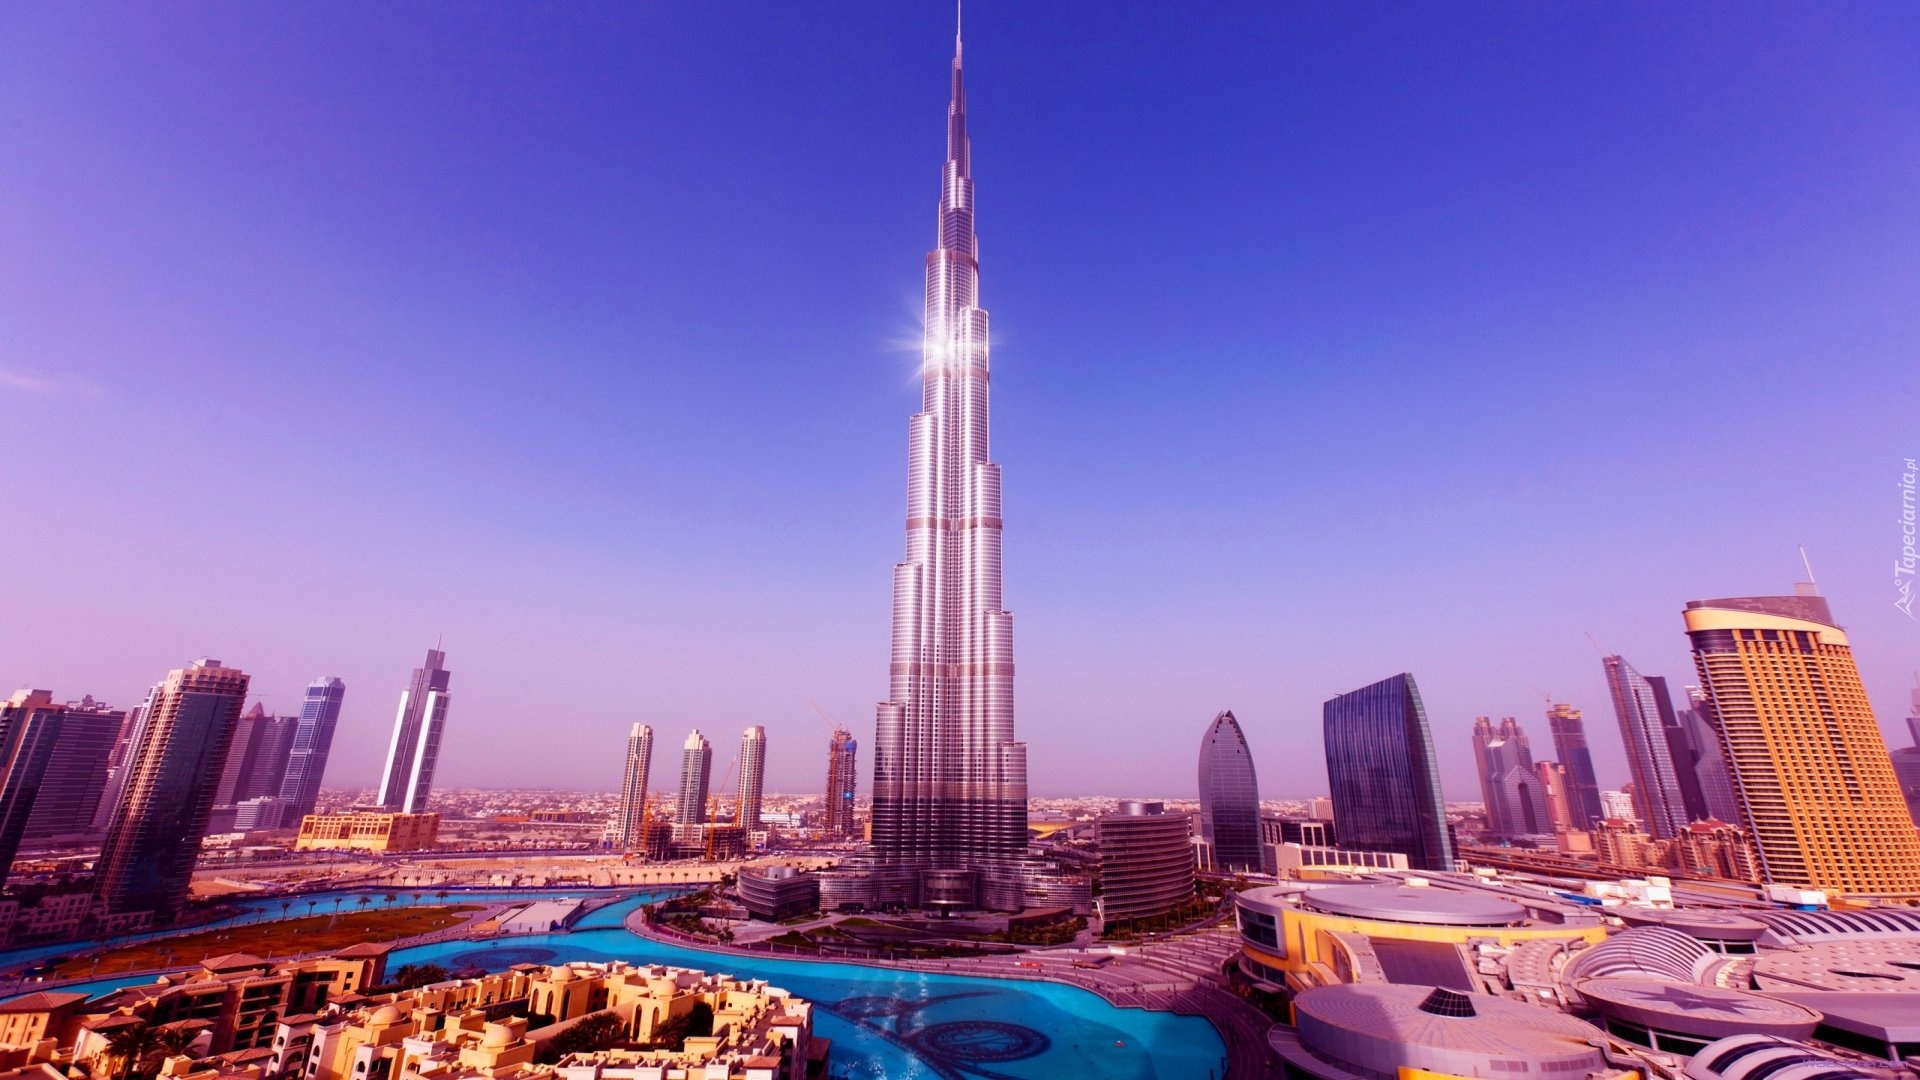 Wieżowiec, Burj Khalifa, Dubaj